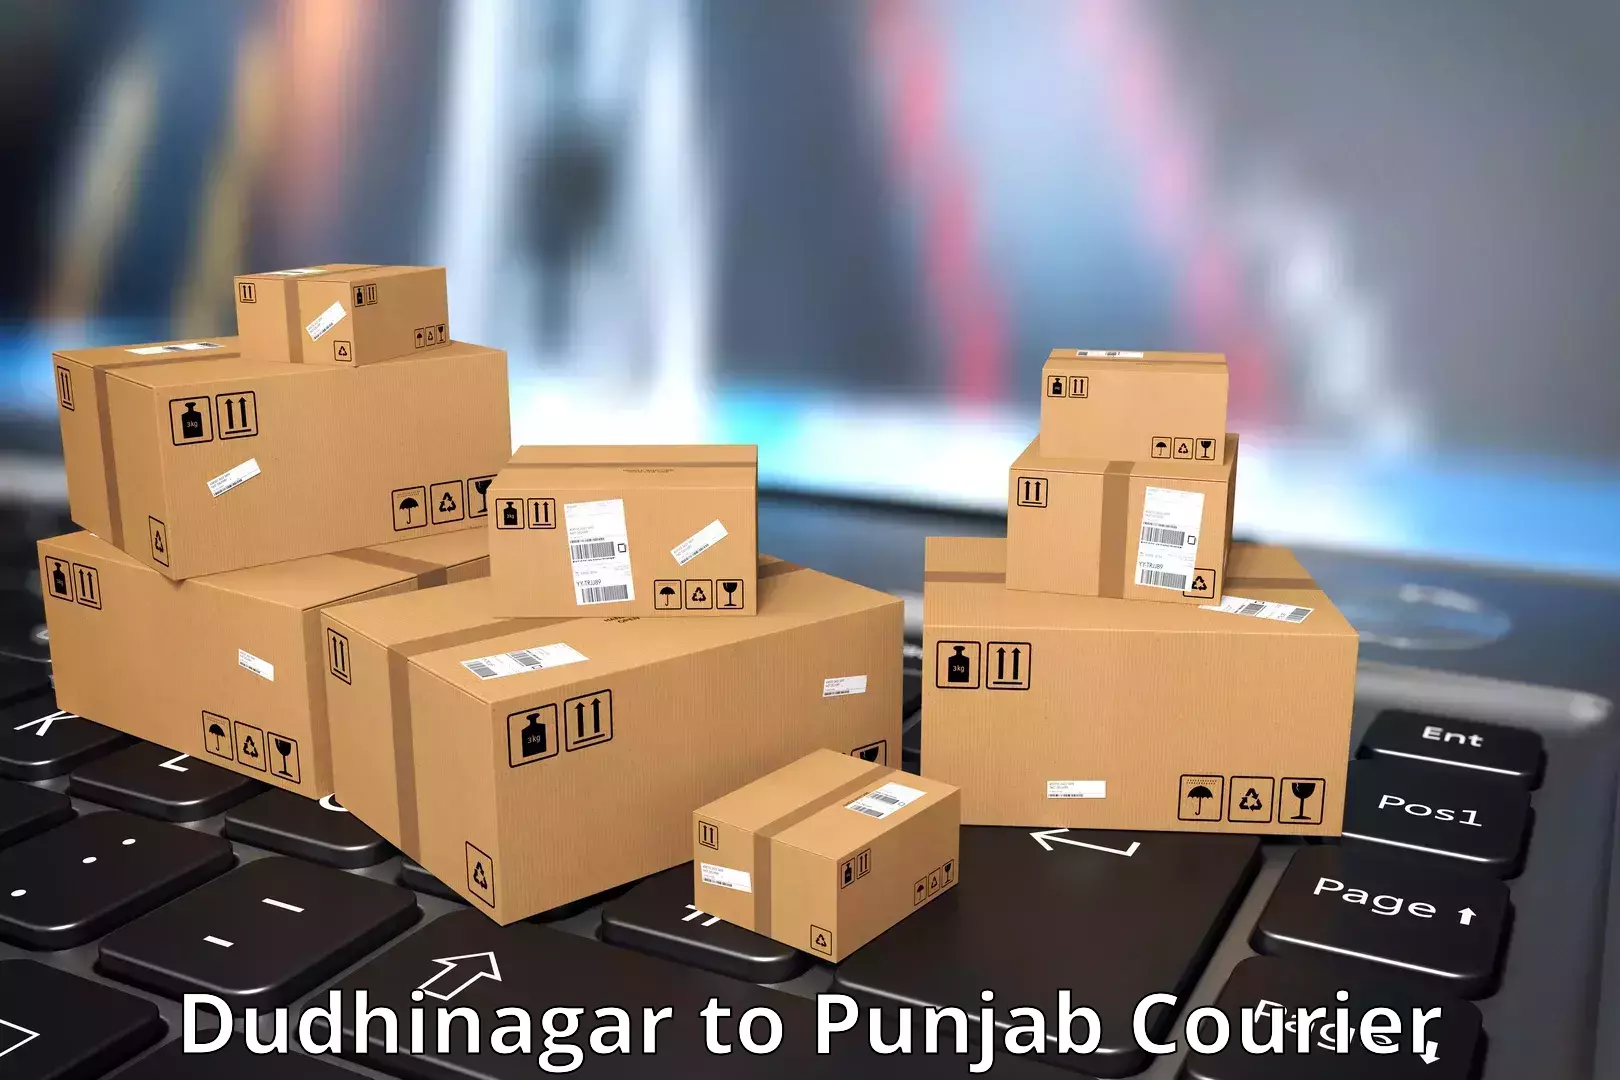 Door-to-door freight service Dudhinagar to Amritsar